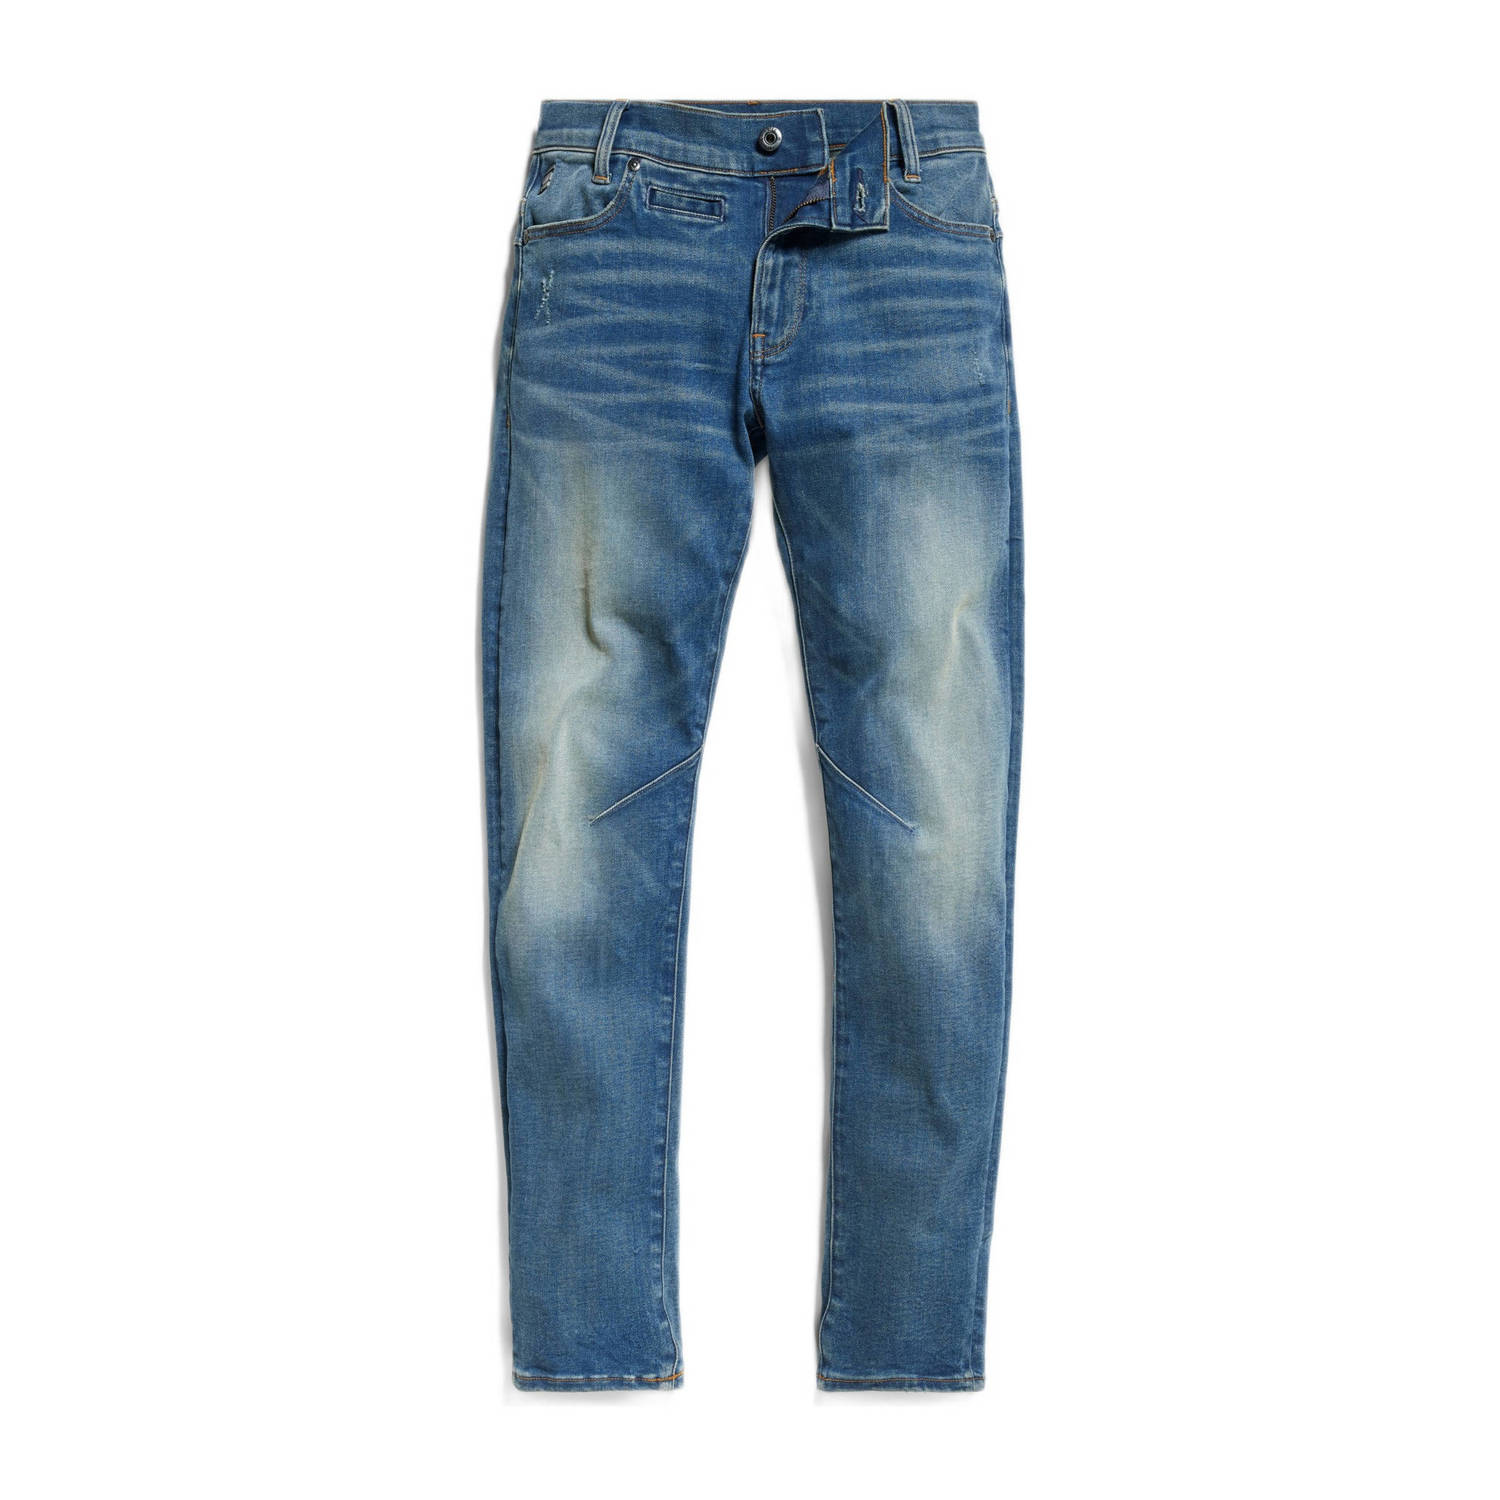 G-Star Raw D-STAQ regular fit jeans sun faded indigo Blauw Jongens Stretchdenim 116